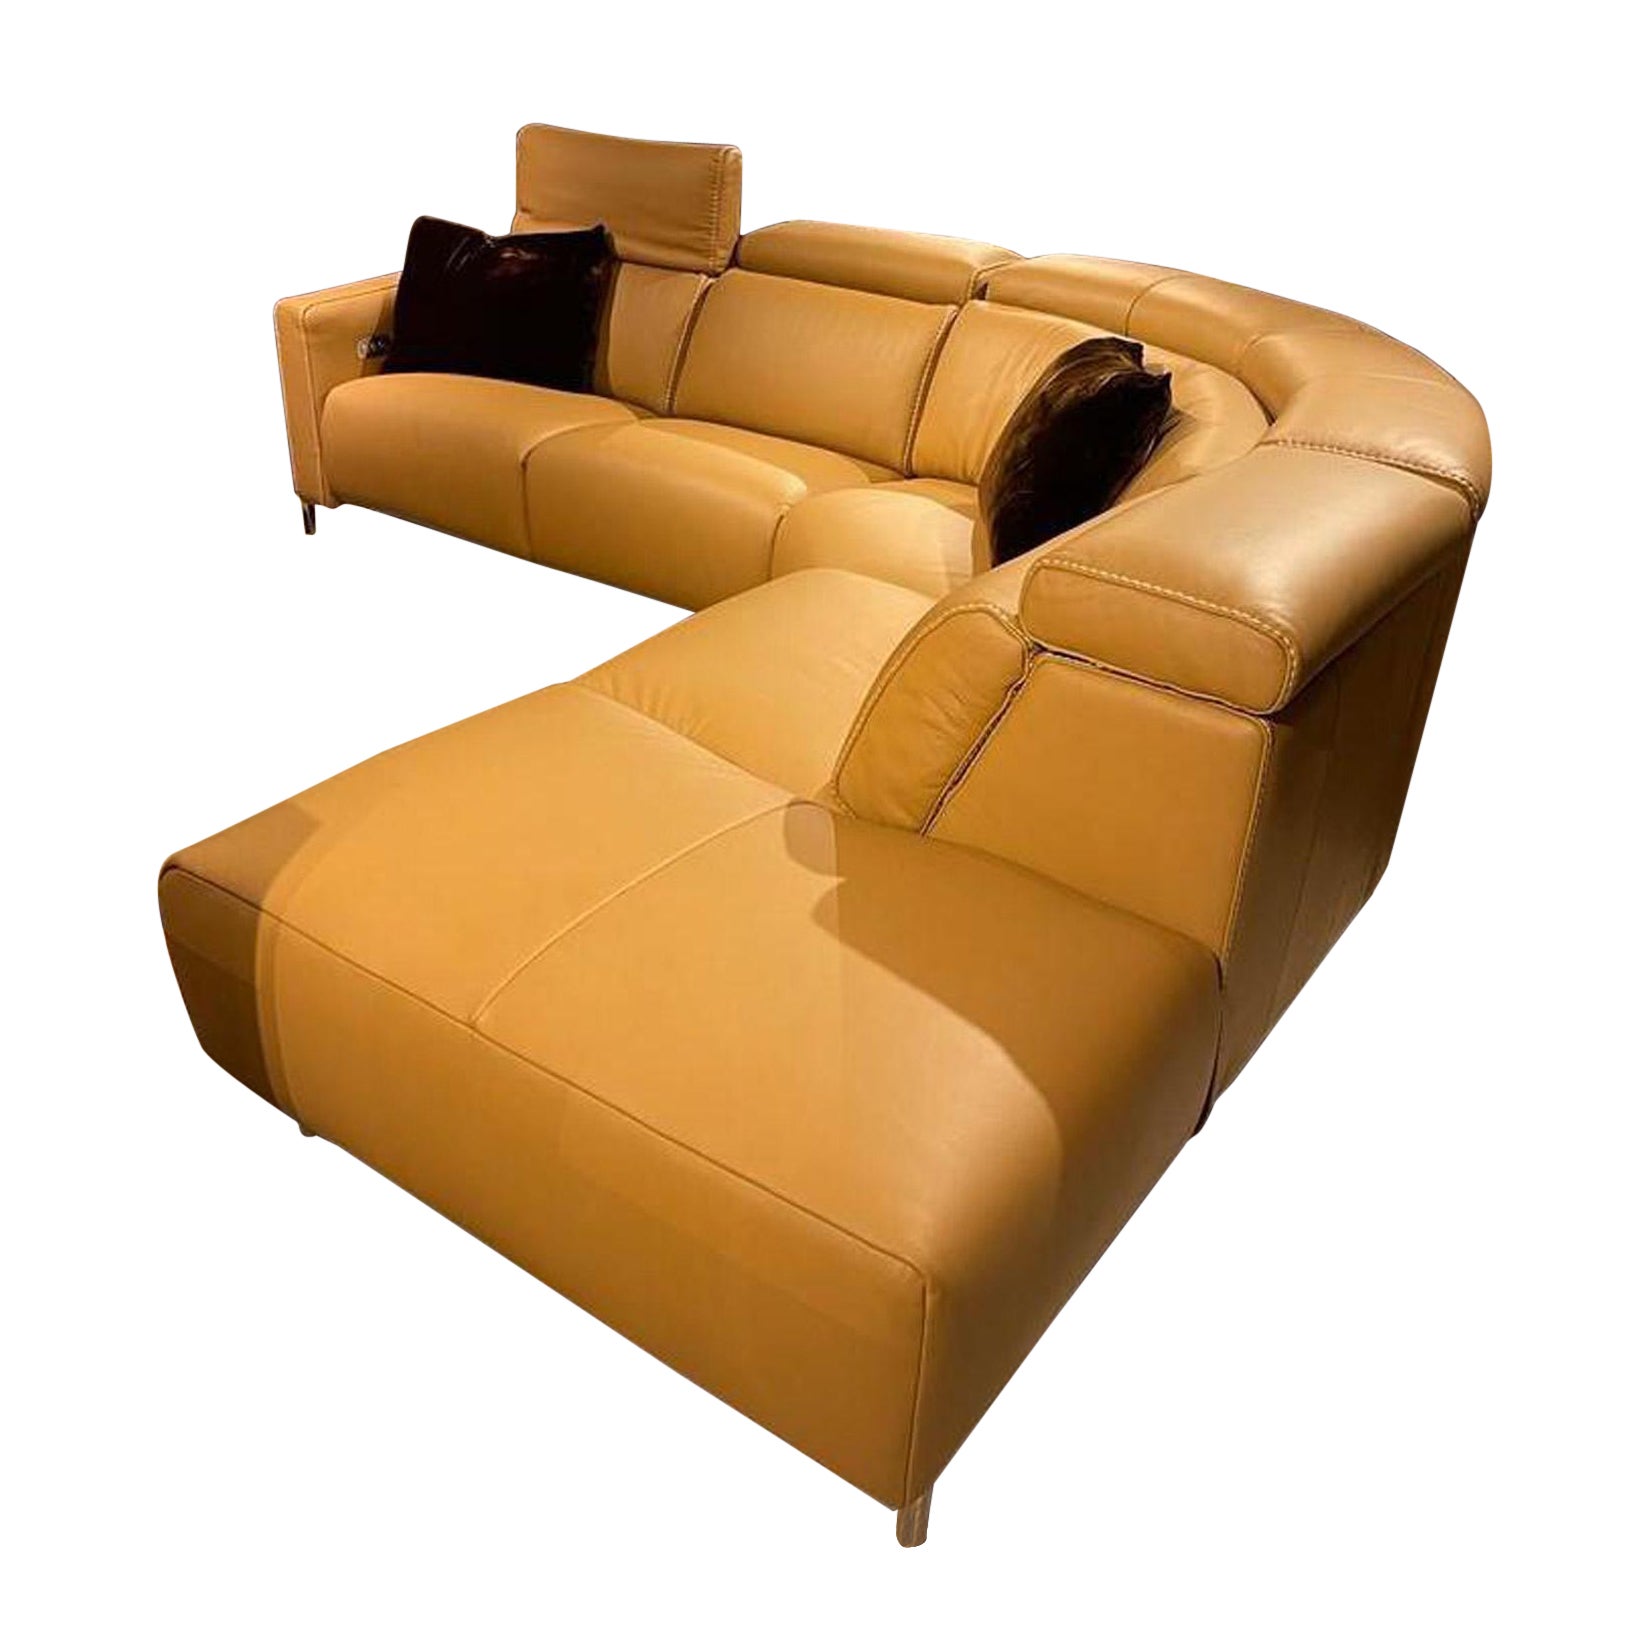 Canapé sectionnel italien Fellini en cuir avec 3 sièges inclinables